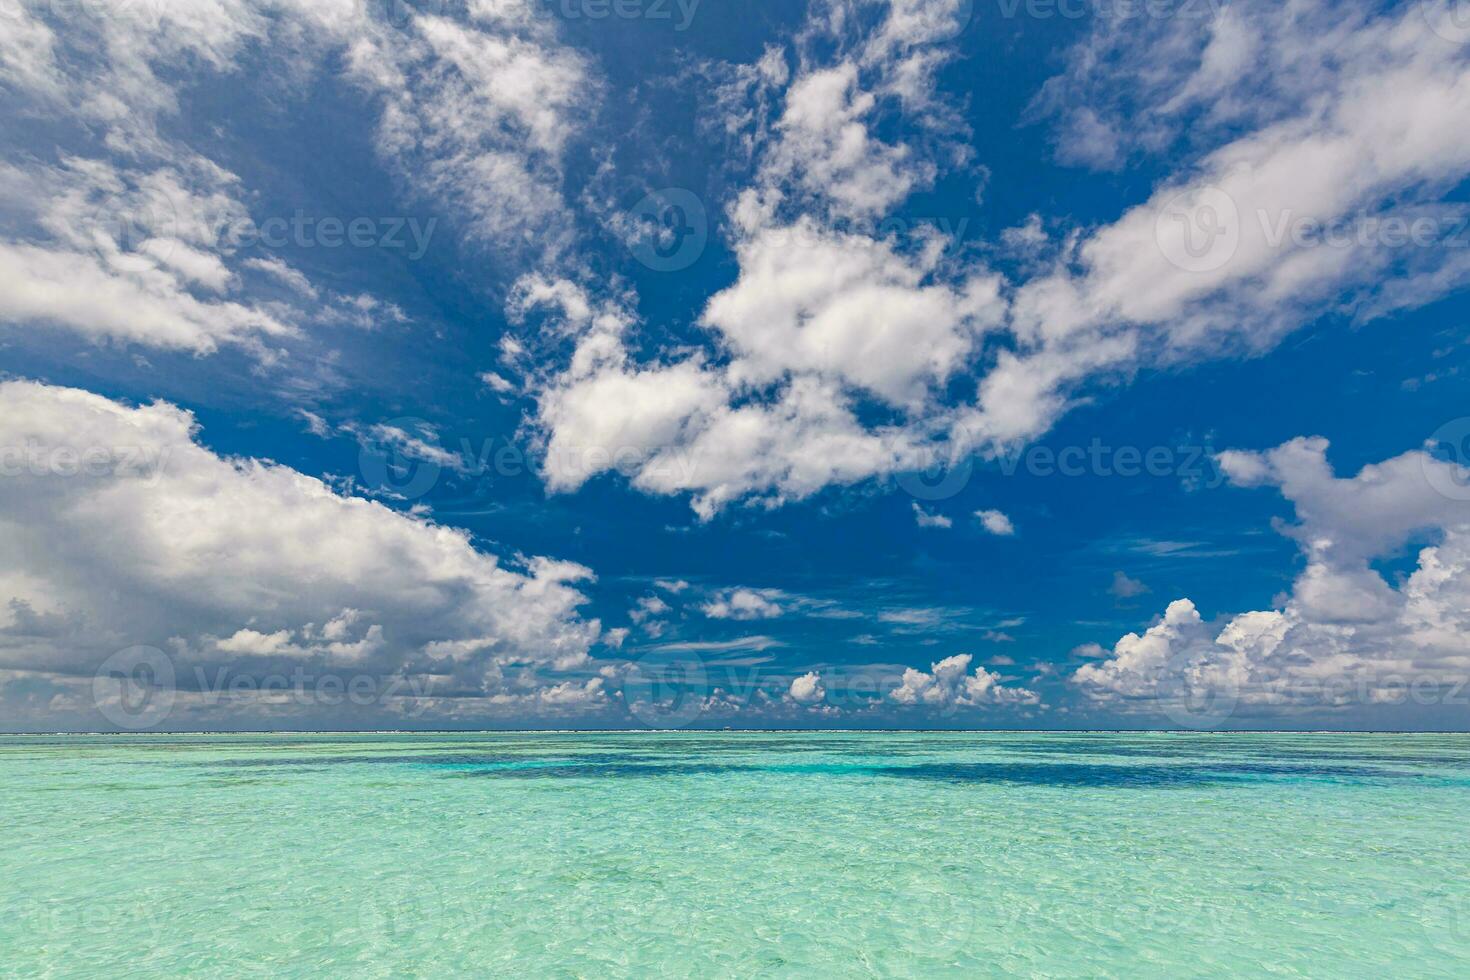 vista do mar com horizonte de mar e céu azul profundo em tempo calmo e ensolarado. vista panorâmica do mar linda com nuvens em um dia ensolarado. vista infinita do mar azul foto